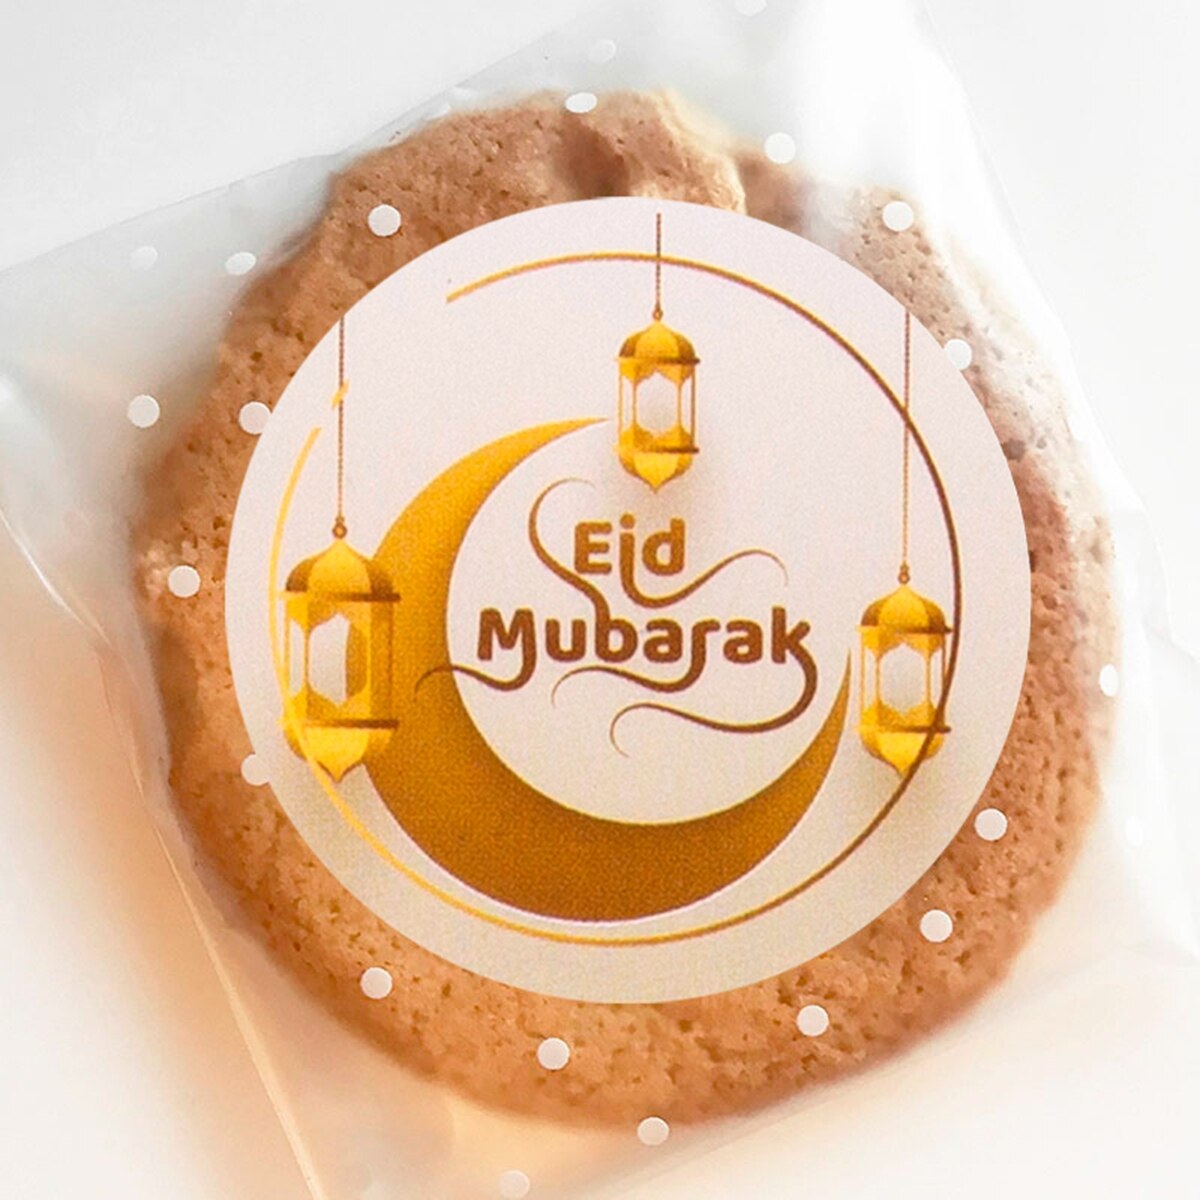 Phụ Kiện Trang Trí Lễ Hội Hồi Giáo Mubarak